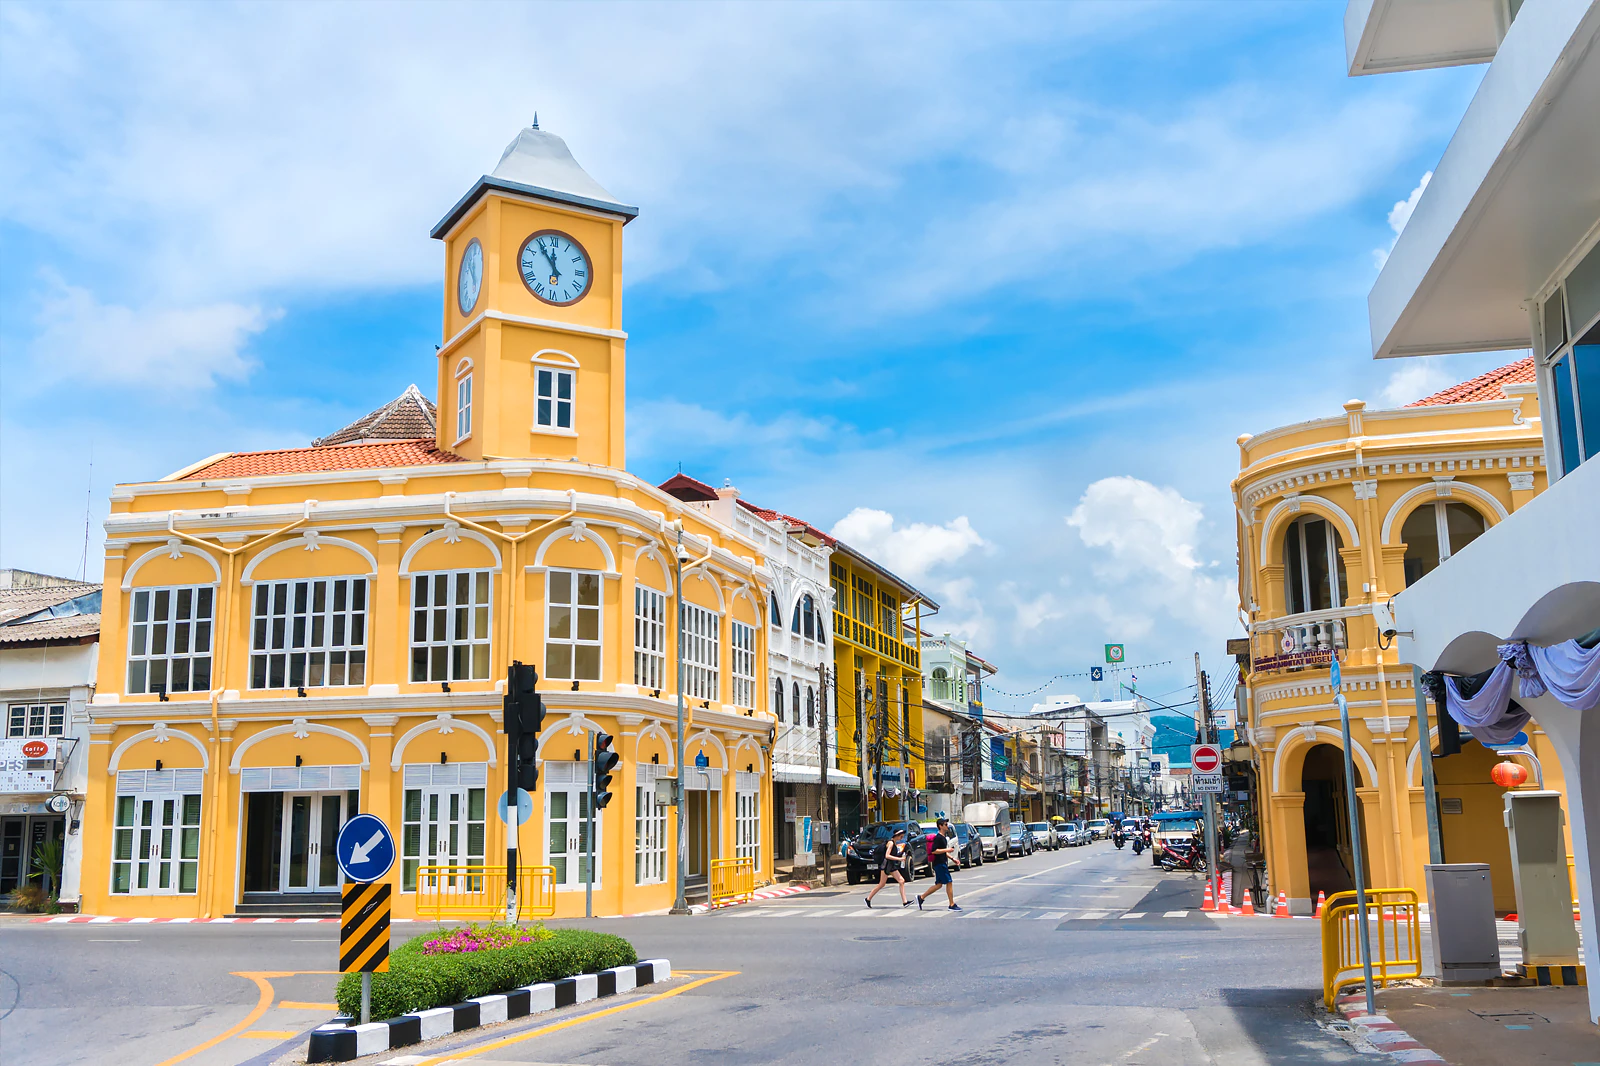 Phuket Old town